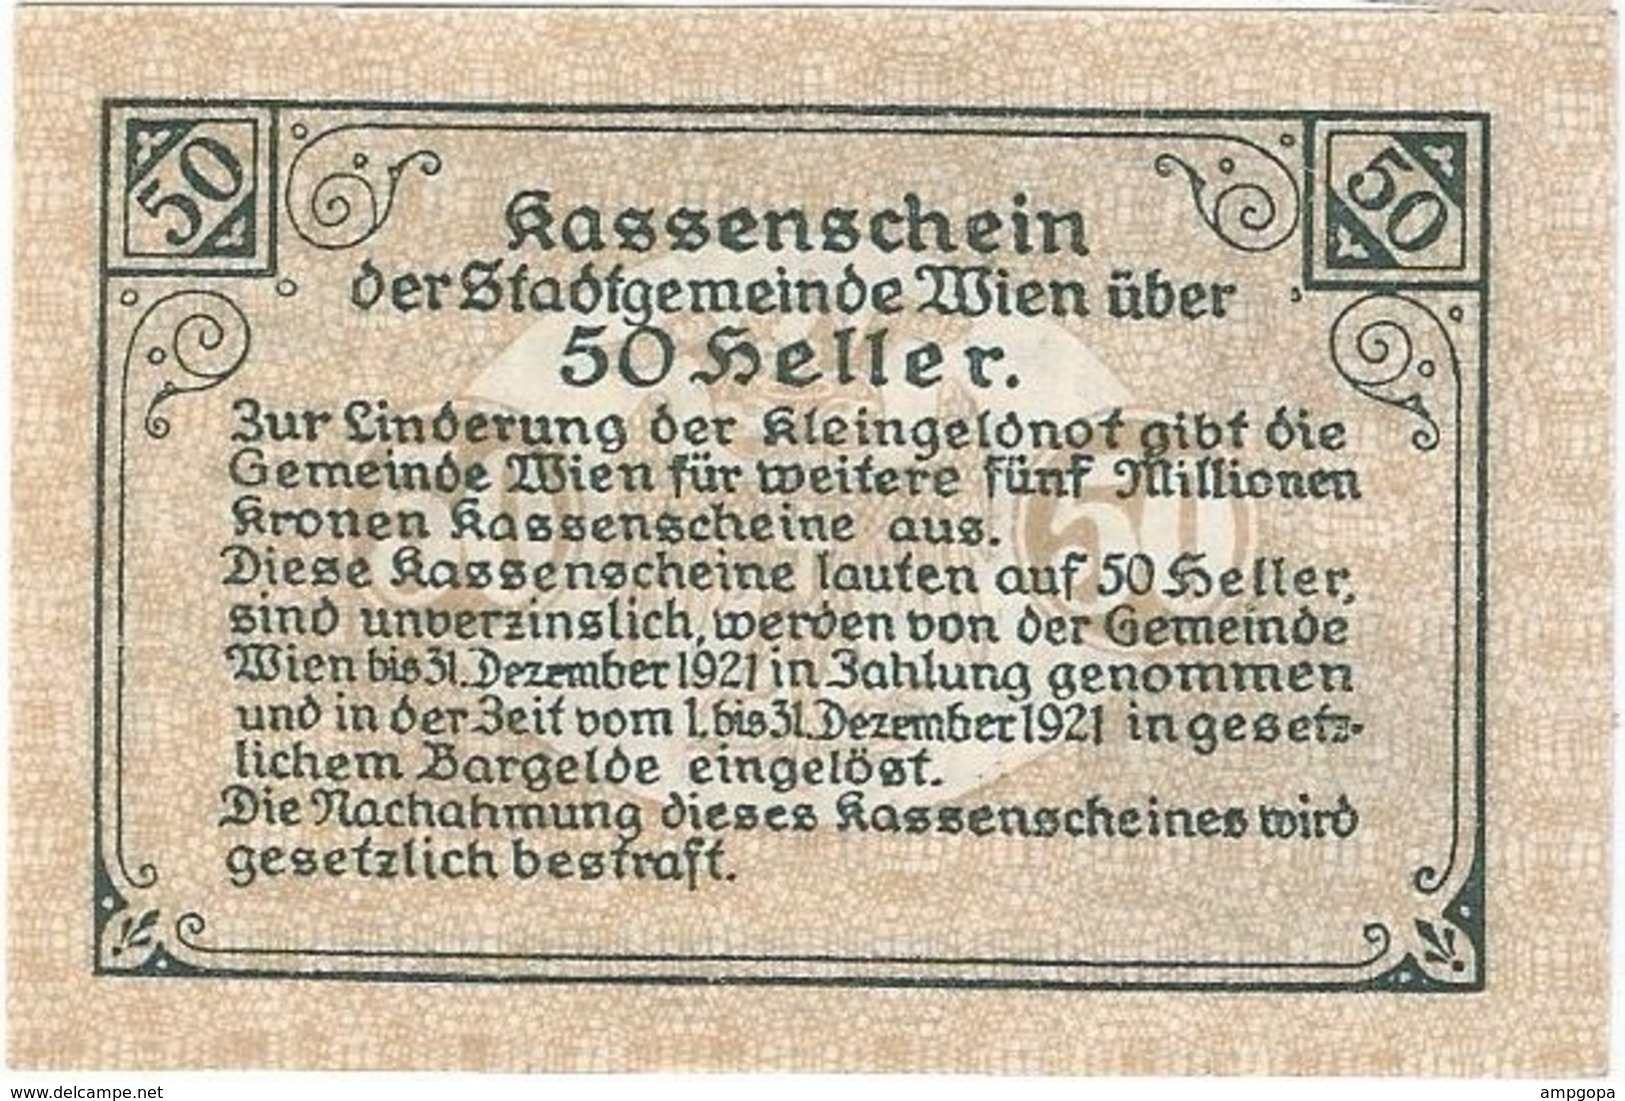 Austria (NOTGELD) 50 Heller Wien 3-12-1920 Kon 1183 II.b.a  UNC Ref 3659-1 - Austria